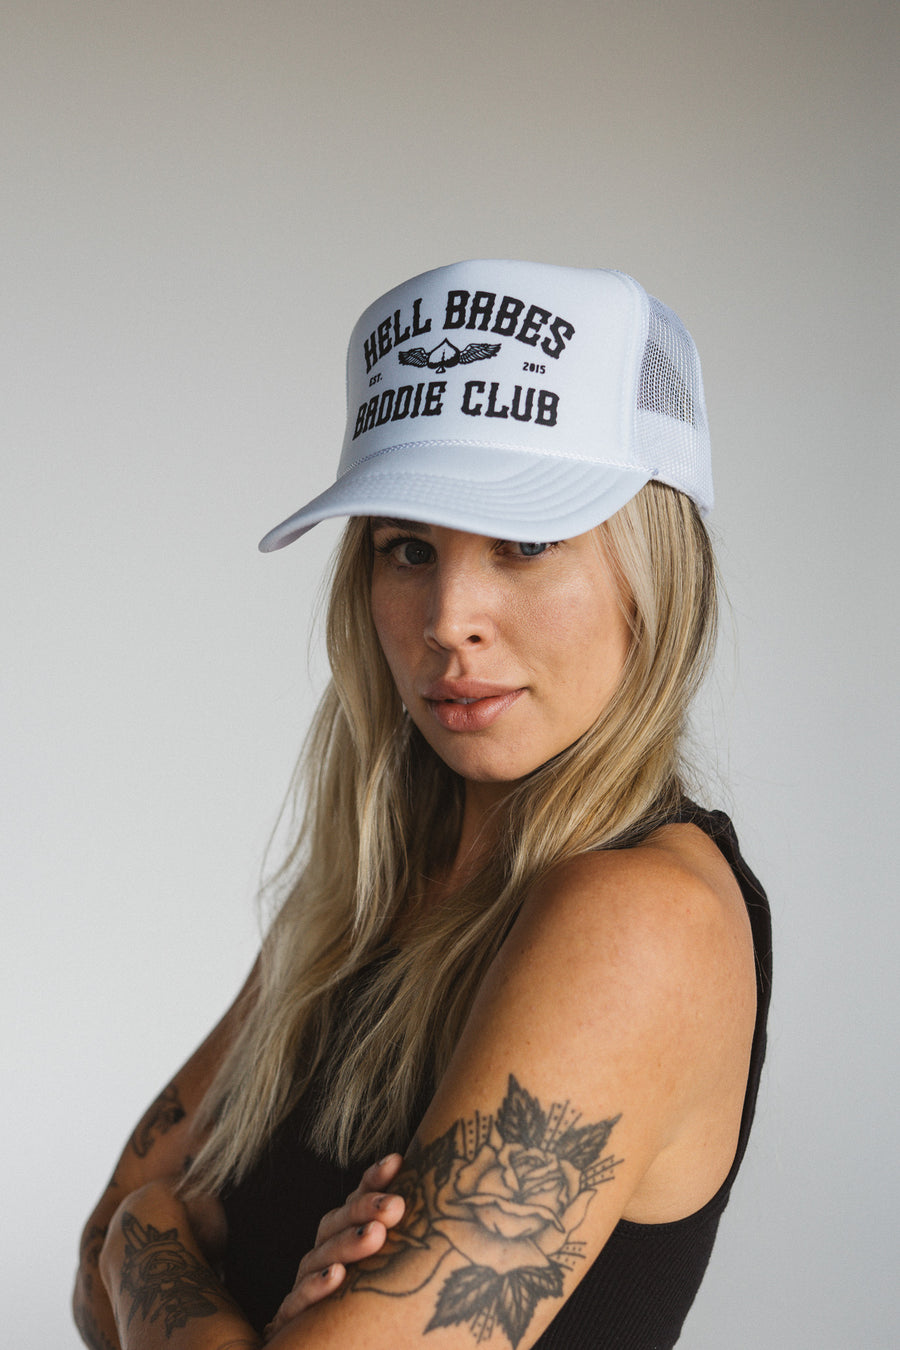 Baddie Club Trucker Hat - White